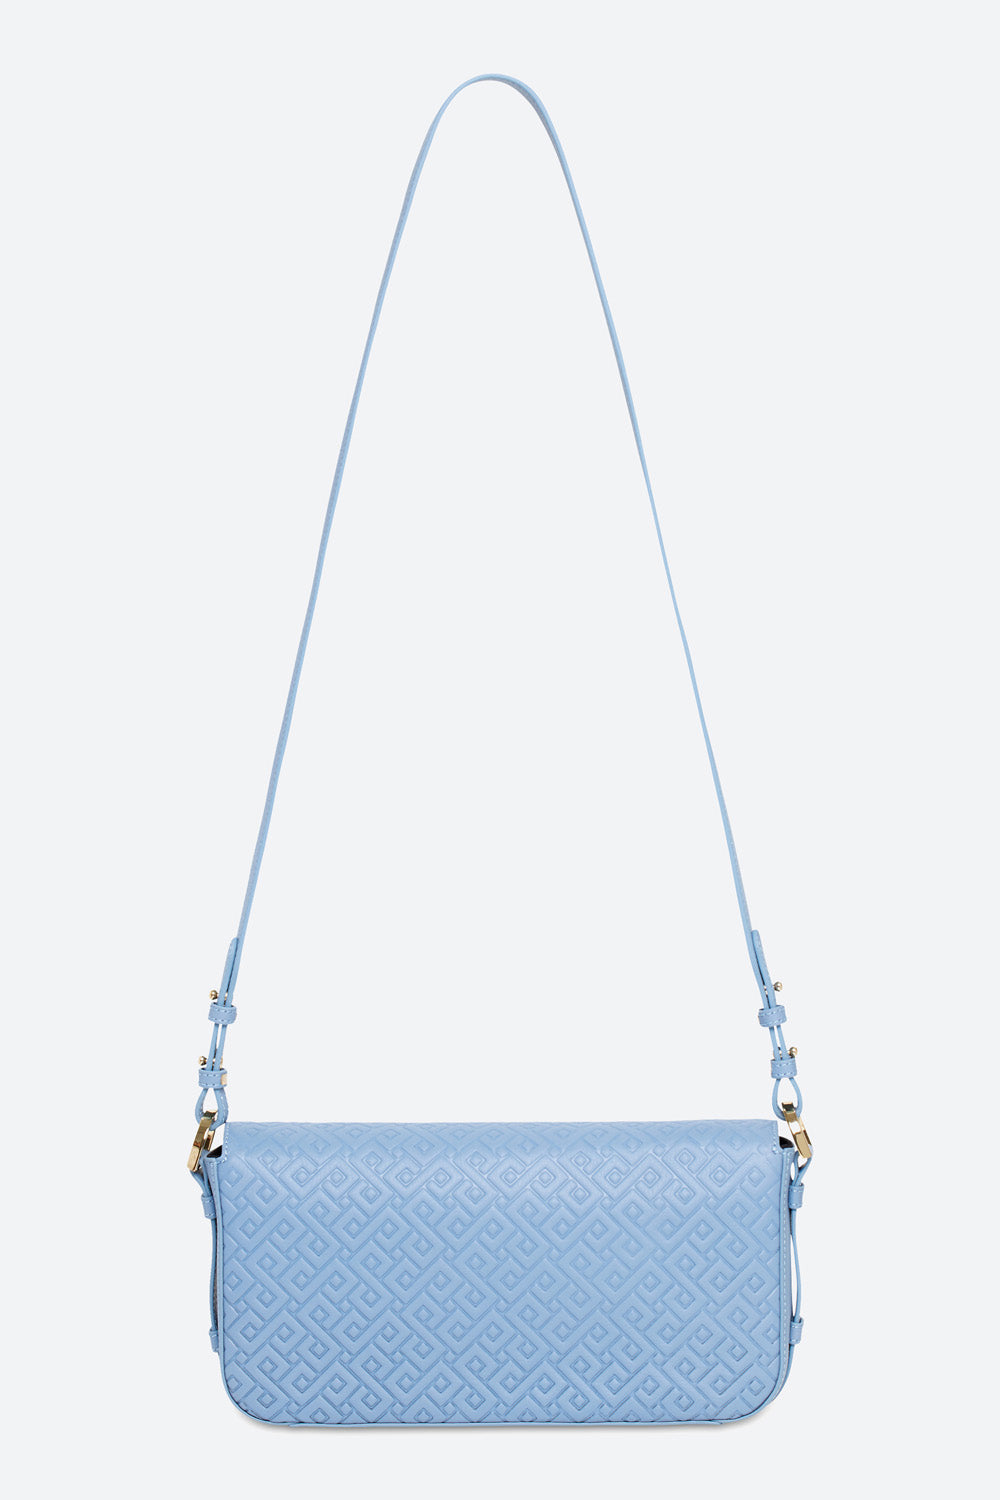 Malvina Baguette Handbag in Light Blue, with Polished Gold-toned Hardware